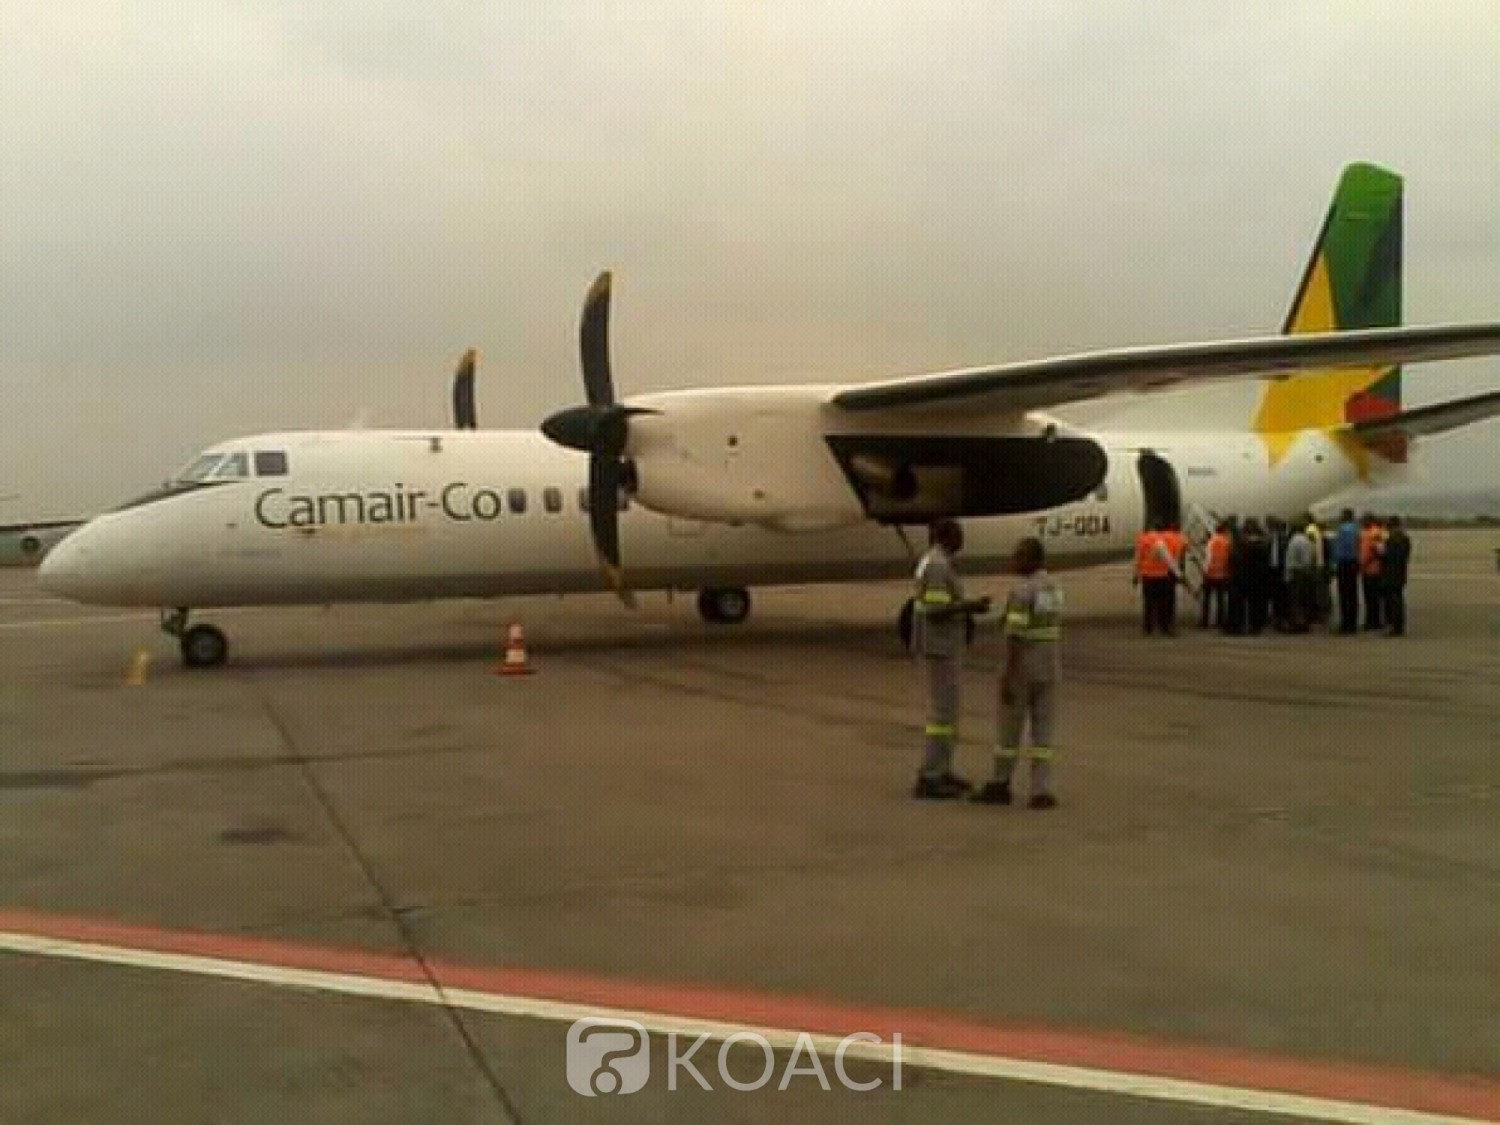 Cameroun :  Incertitudes sur les causes de sortie de piste d'un avion à l'aéroport de Yaoundé Nsimalen